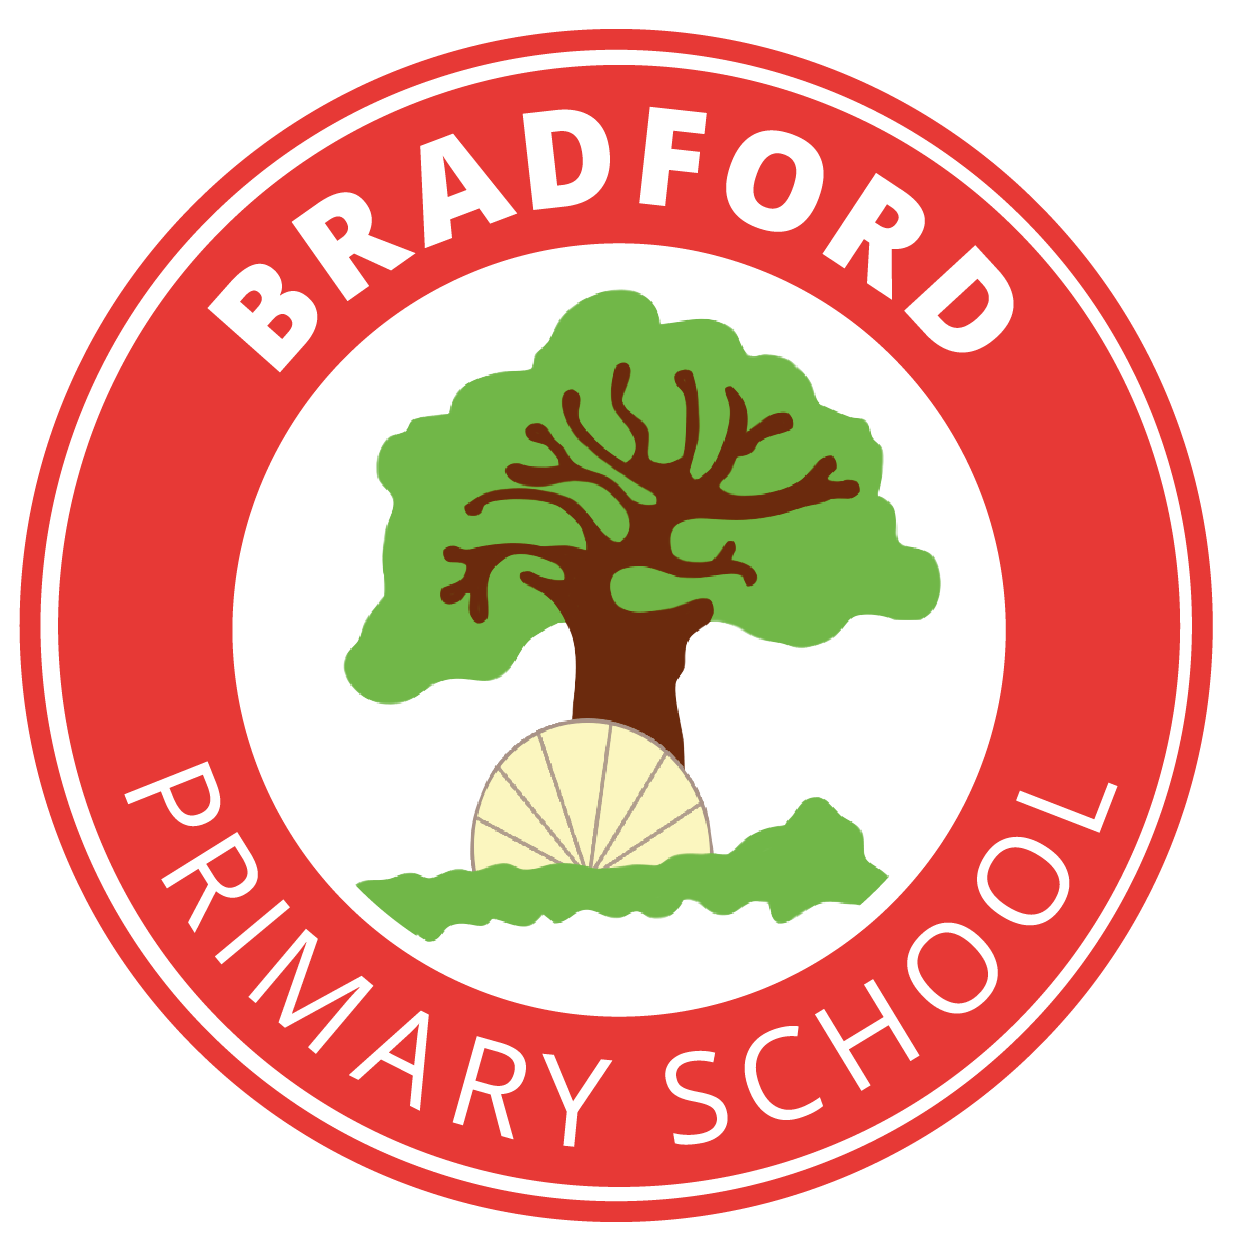 Bradford Primary School